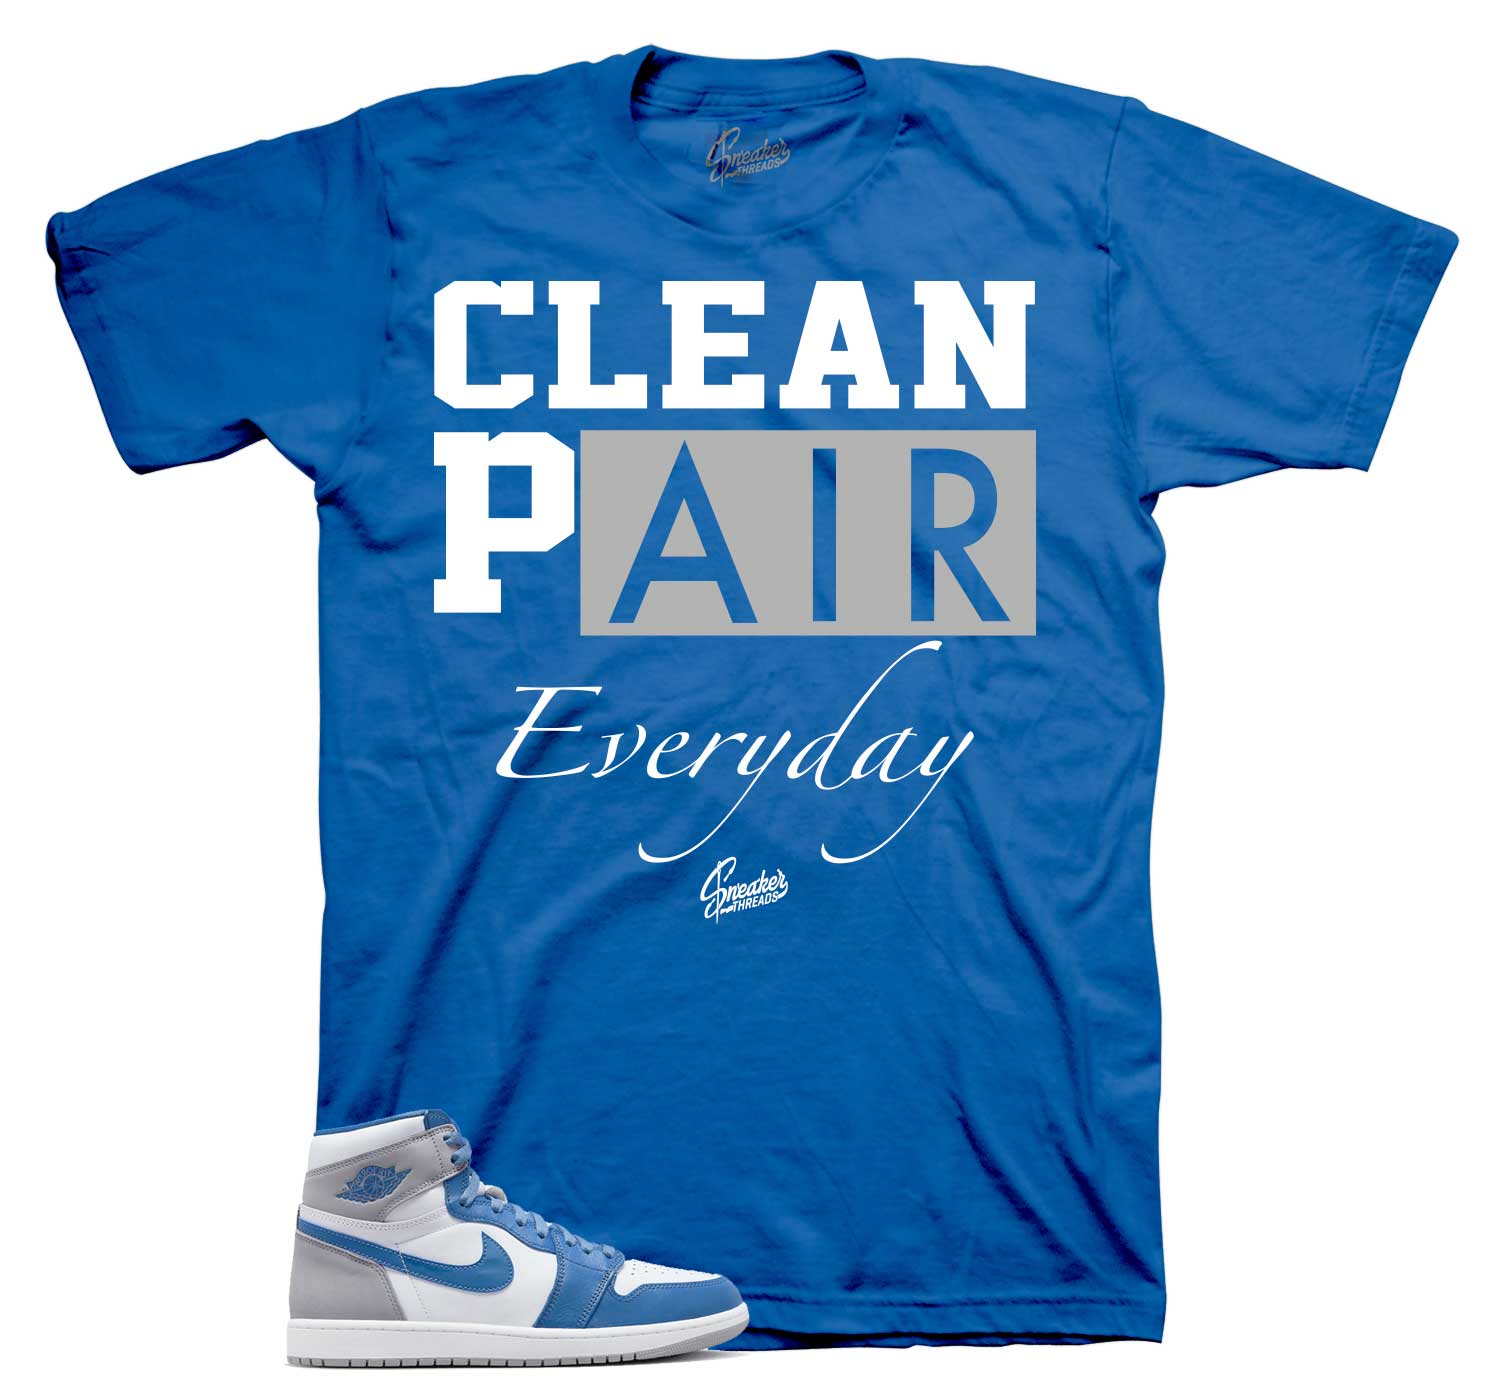 Retro 1 True Blue Shirt - Clean Pair - Blue